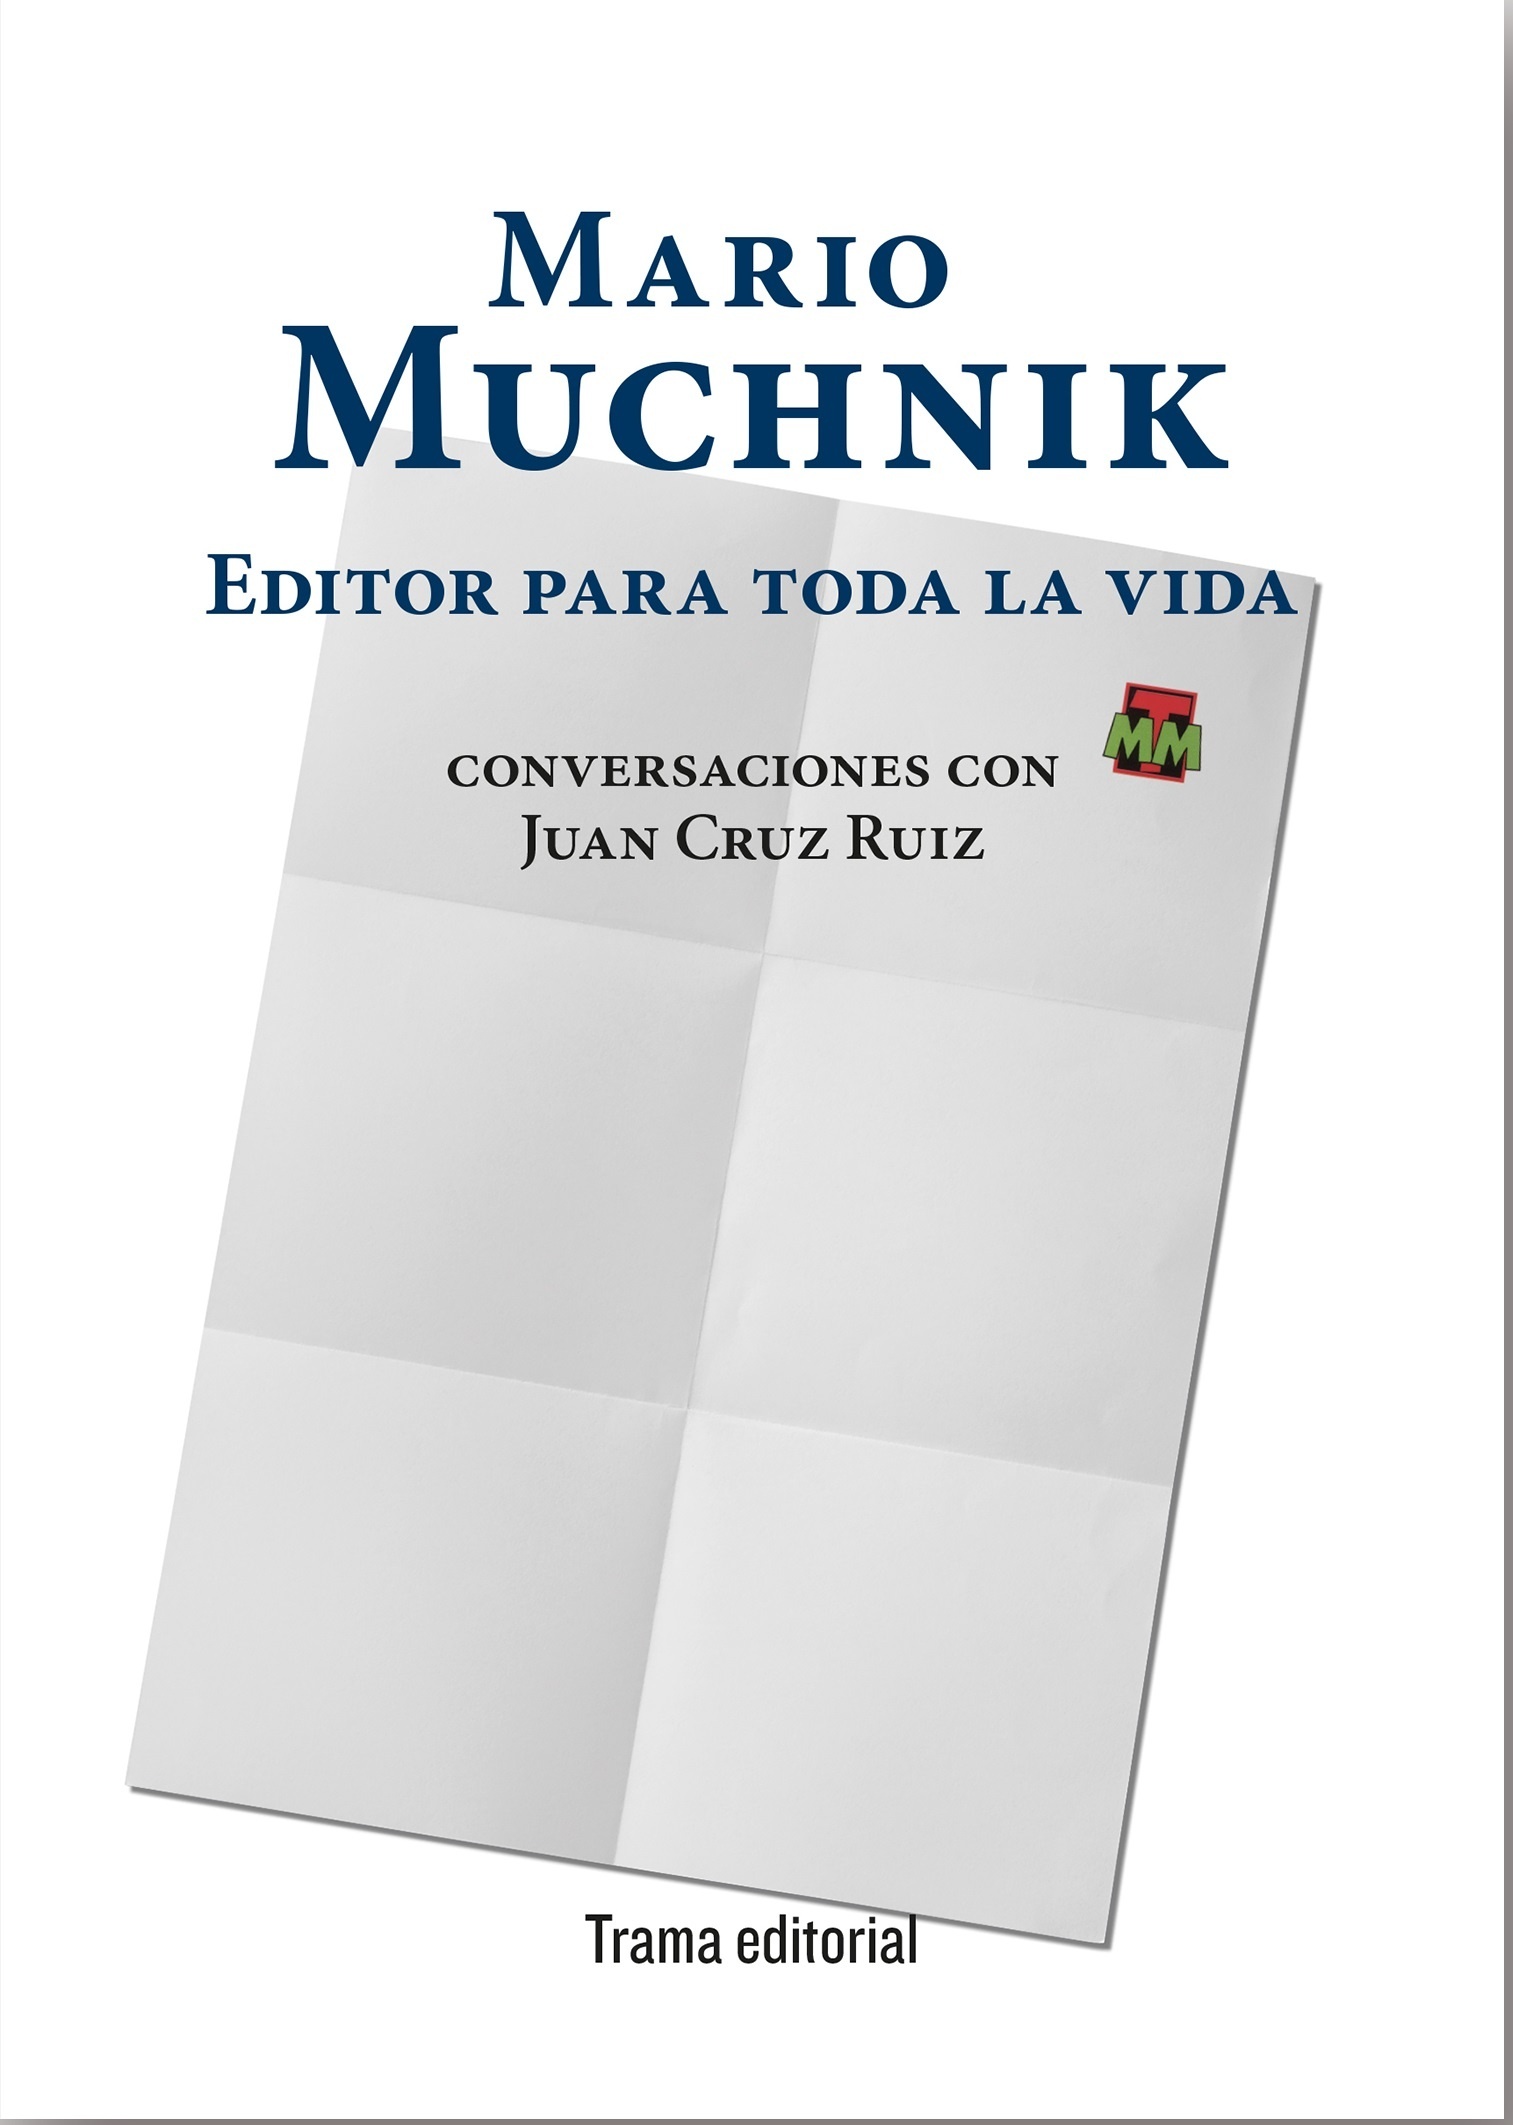 Mario Muchnik. Editor para toda la vida "Conversaciones con Juan Cruz Ruiz". 